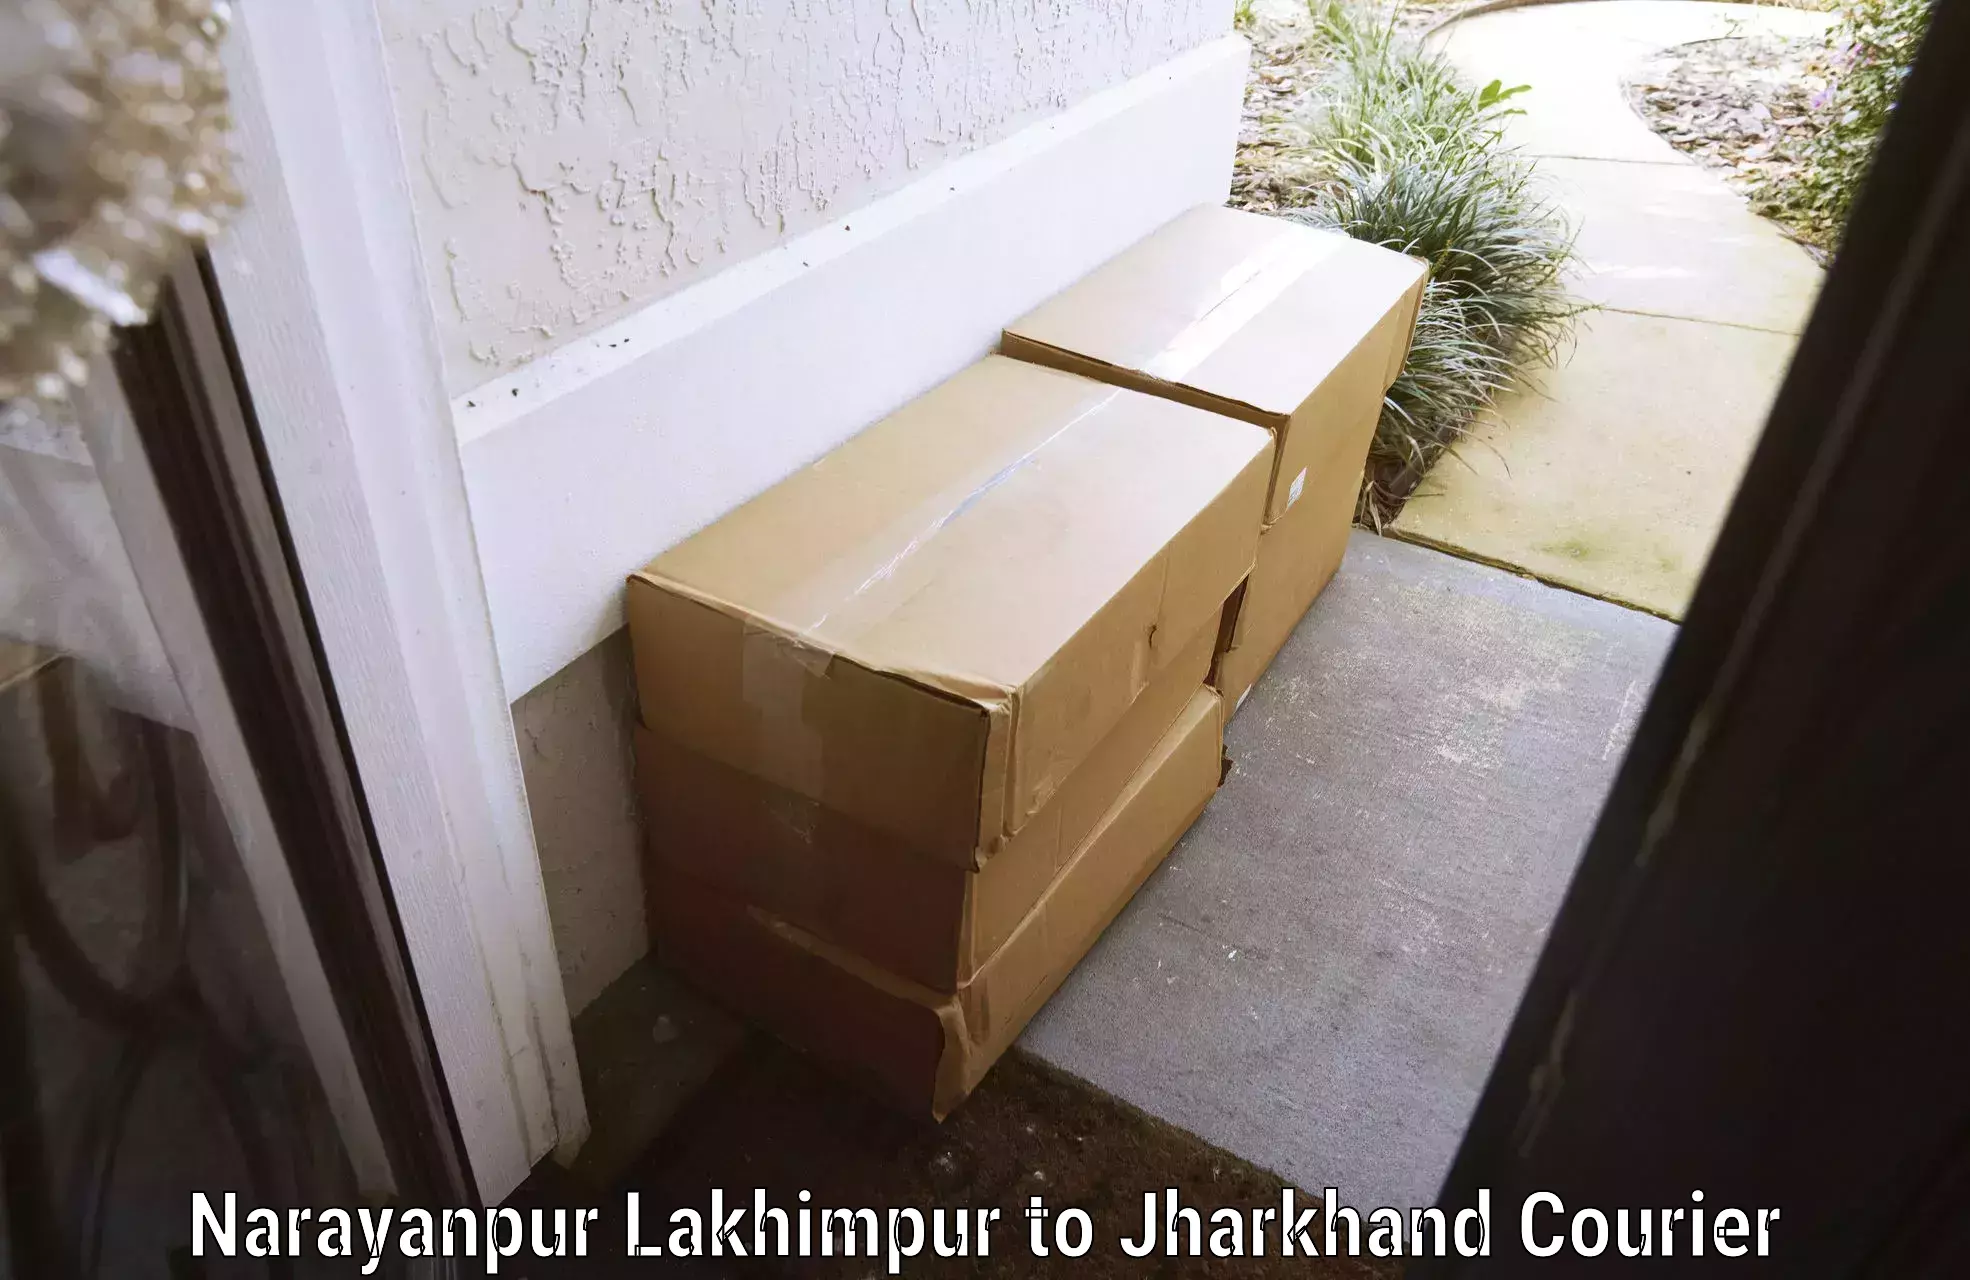 High-quality baggage shipment Narayanpur Lakhimpur to Bokaro